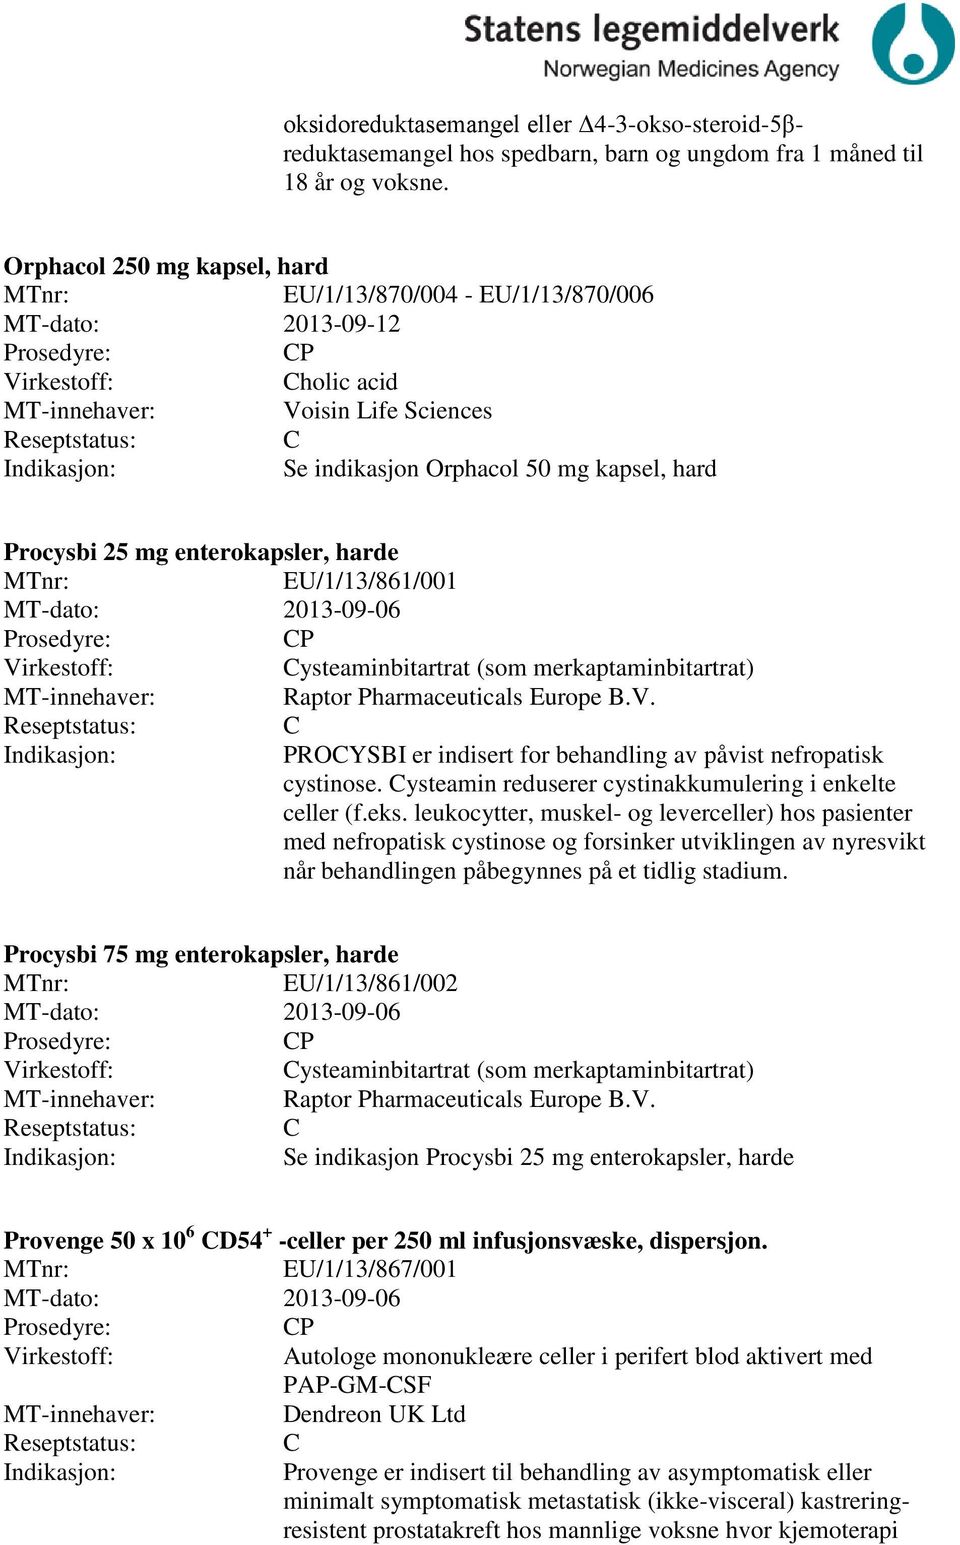 EU/1/13/861/001 MT-dato: 2013-09-06 P ysteaminbitartrat (som merkaptaminbitartrat) Raptor Pharmaceuticals Europe B.V. PROYSBI er indisert for behandling av påvist nefropatisk cystinose.